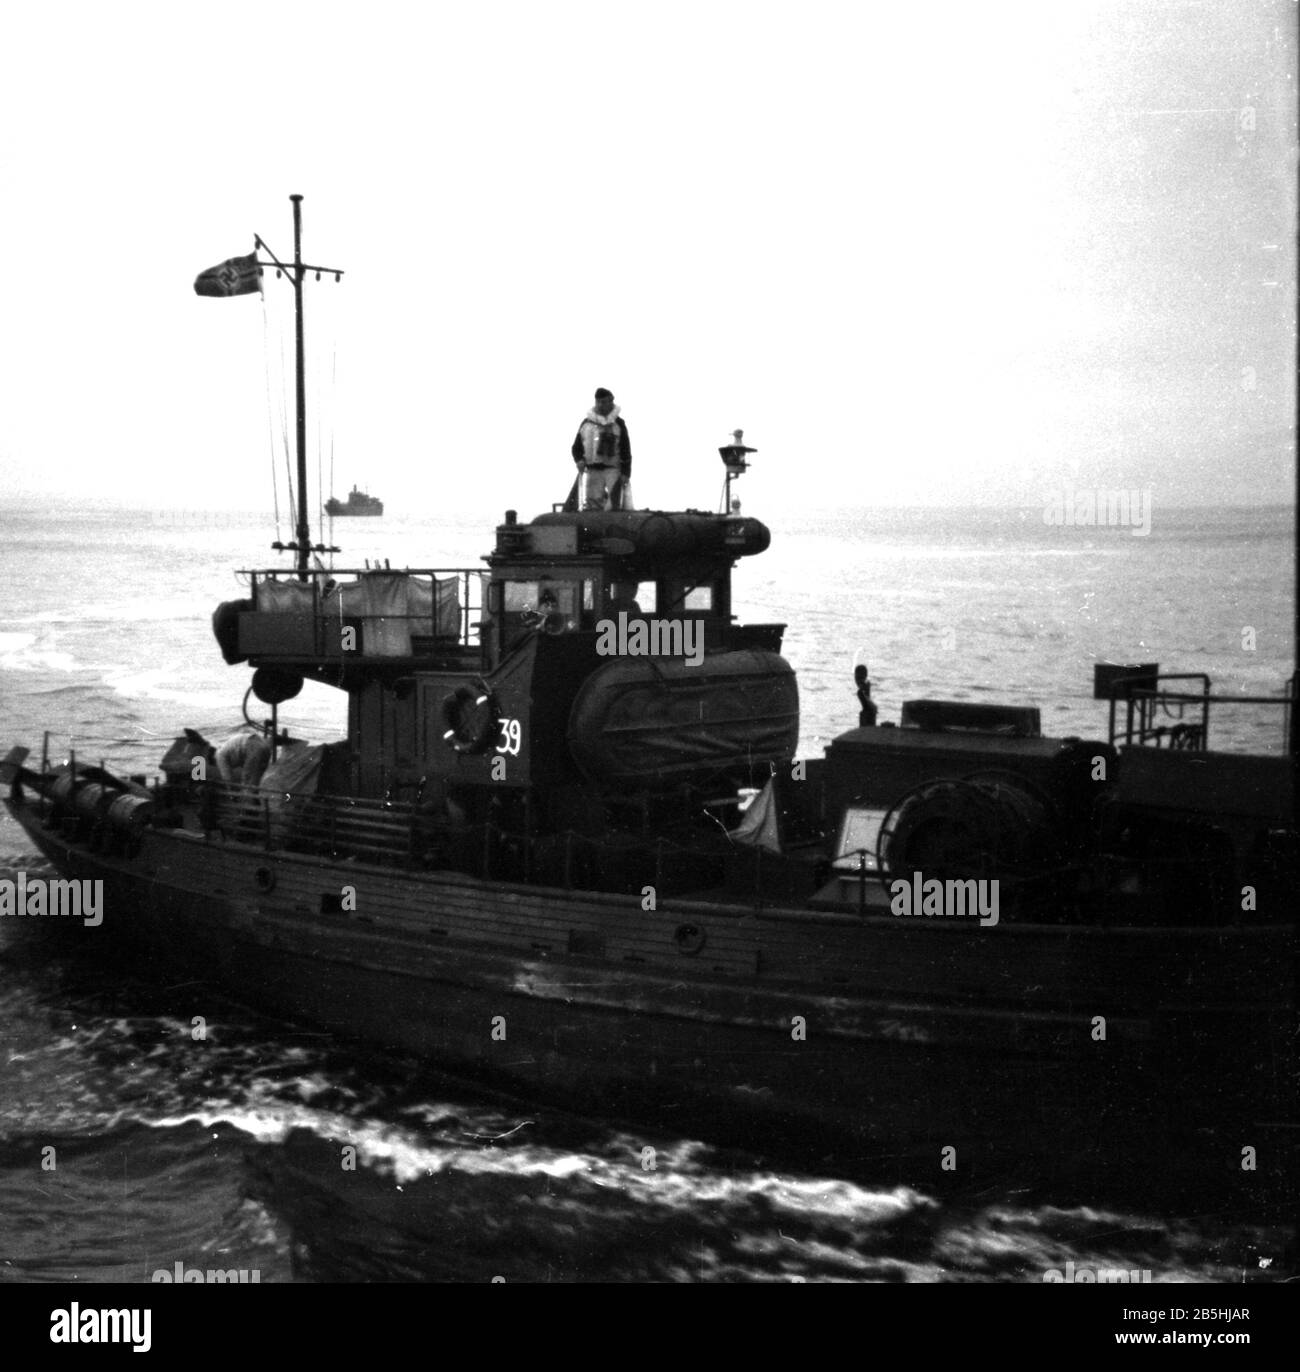 Kriegsfischkutter KFK 39 Deutsche Kriegsmarine / Germany Navy War Fishing Cutter Stock Photo